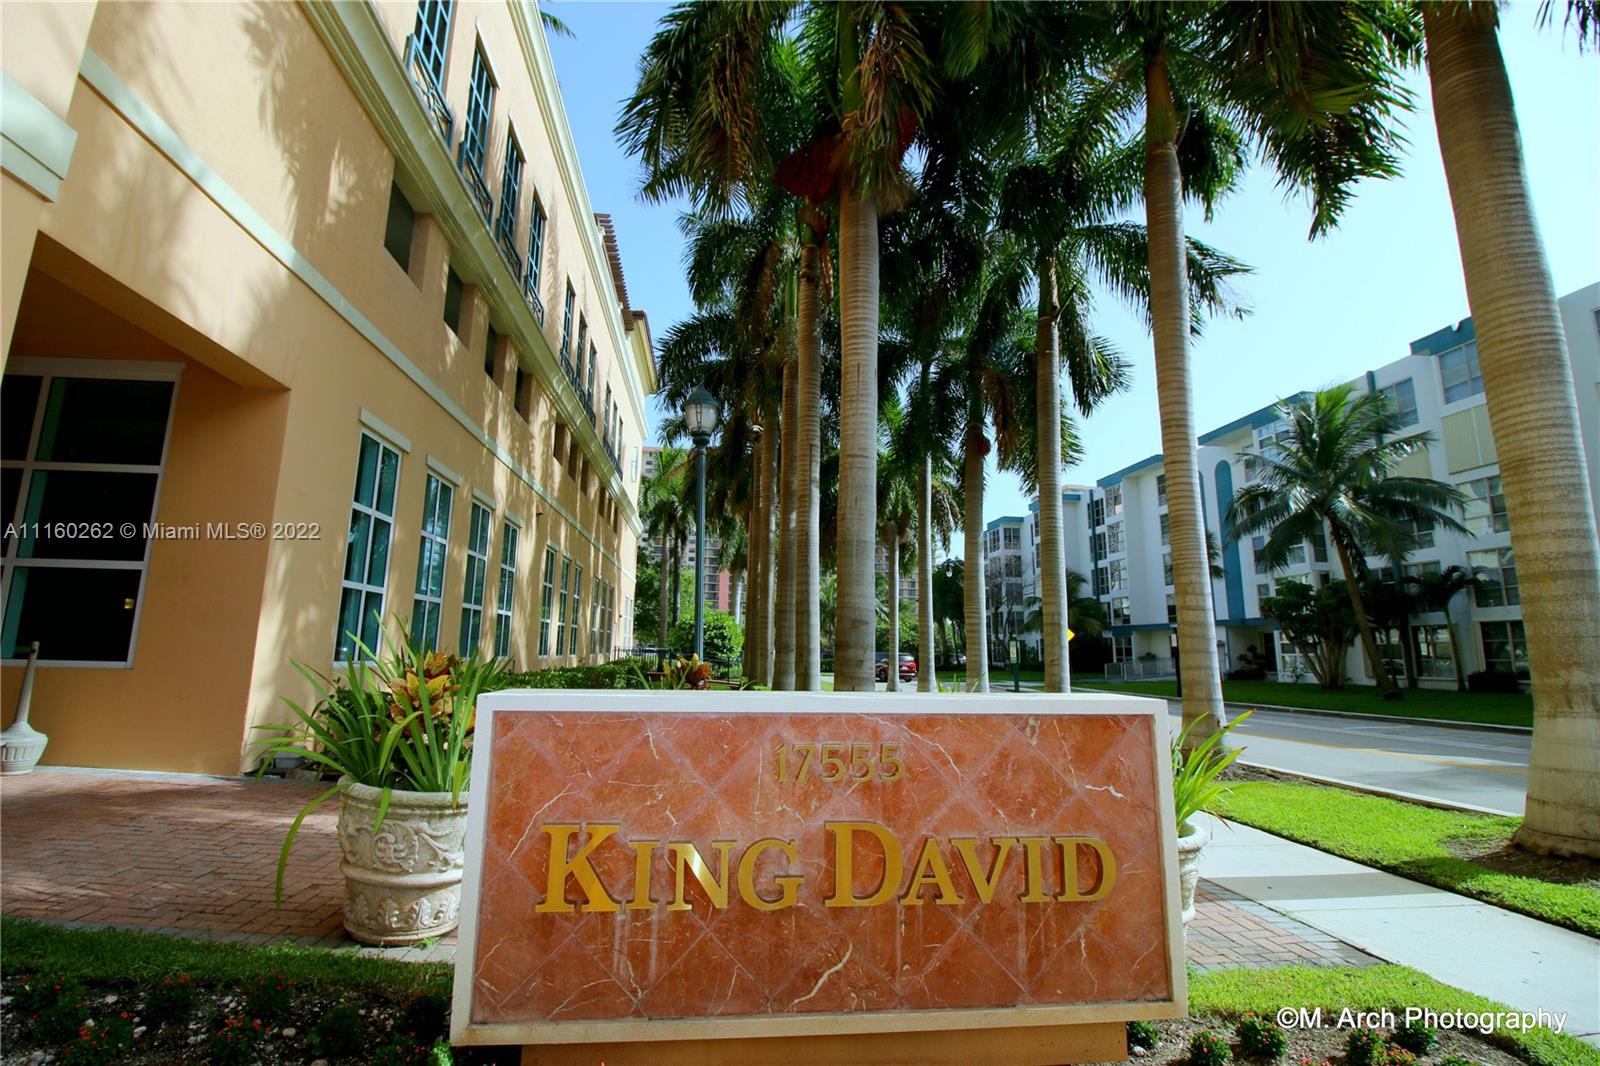 King David image #45